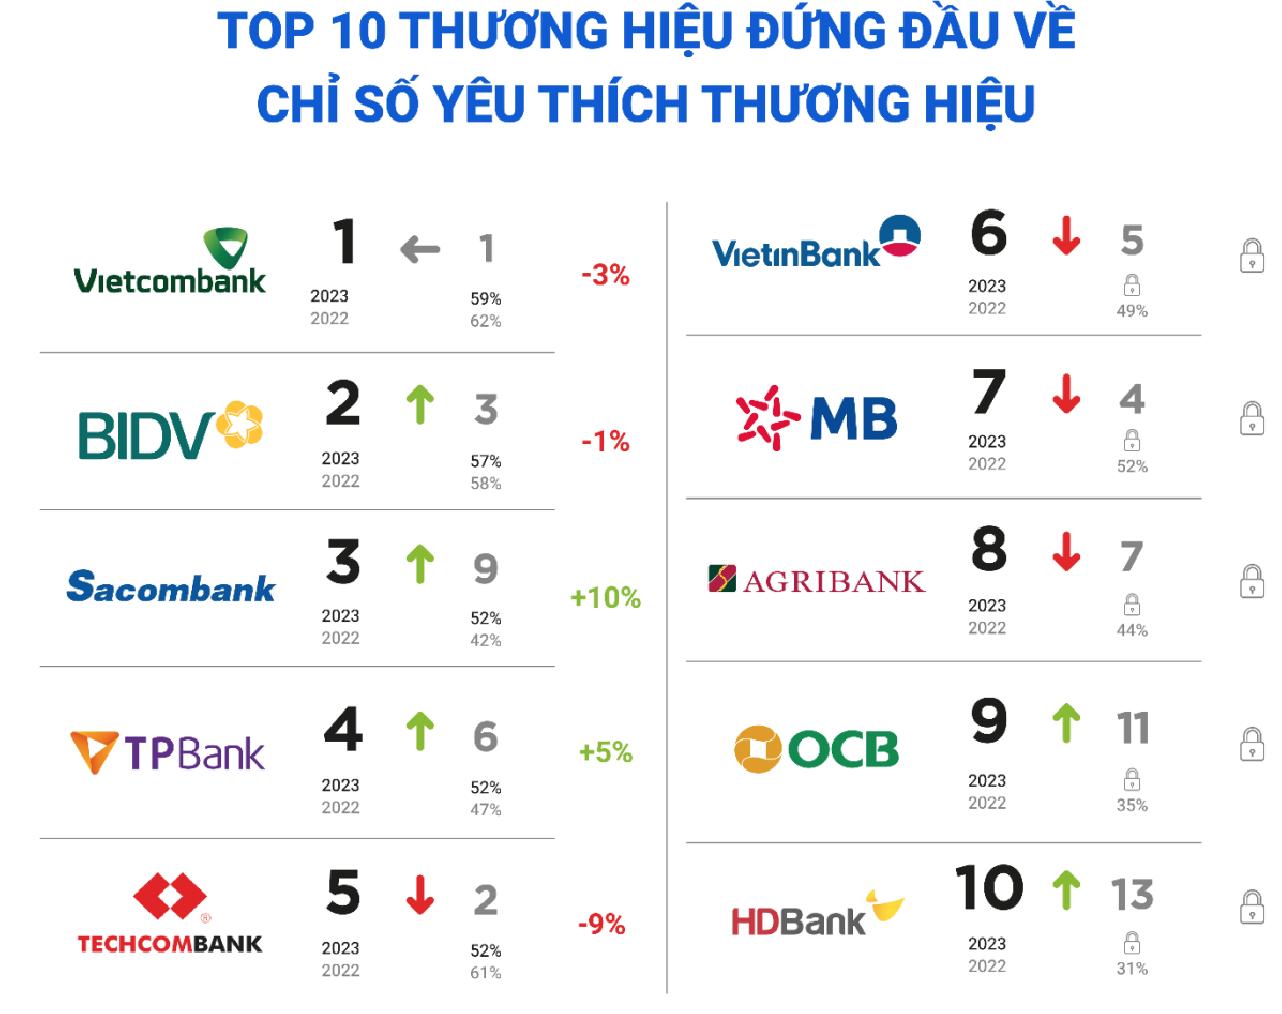 Top 30 thương hiệu ngân hàng được yêu thích nhất Việt Nam điểm danh những ngân hàng nào?